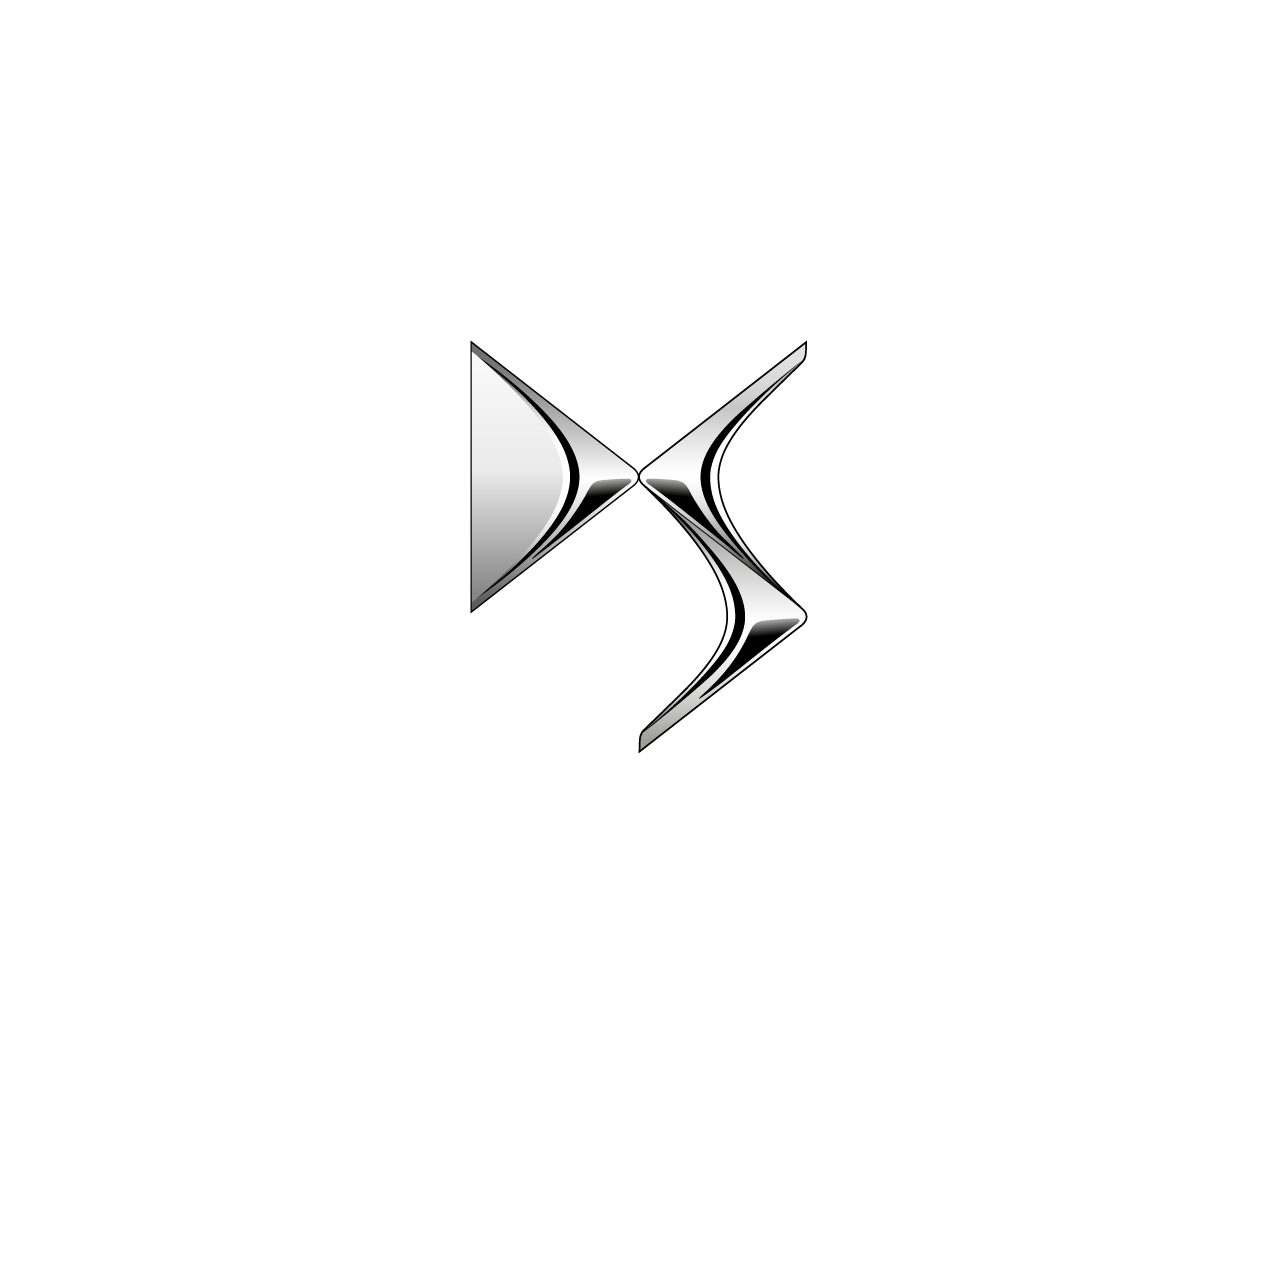 Logo DS Automóbiles